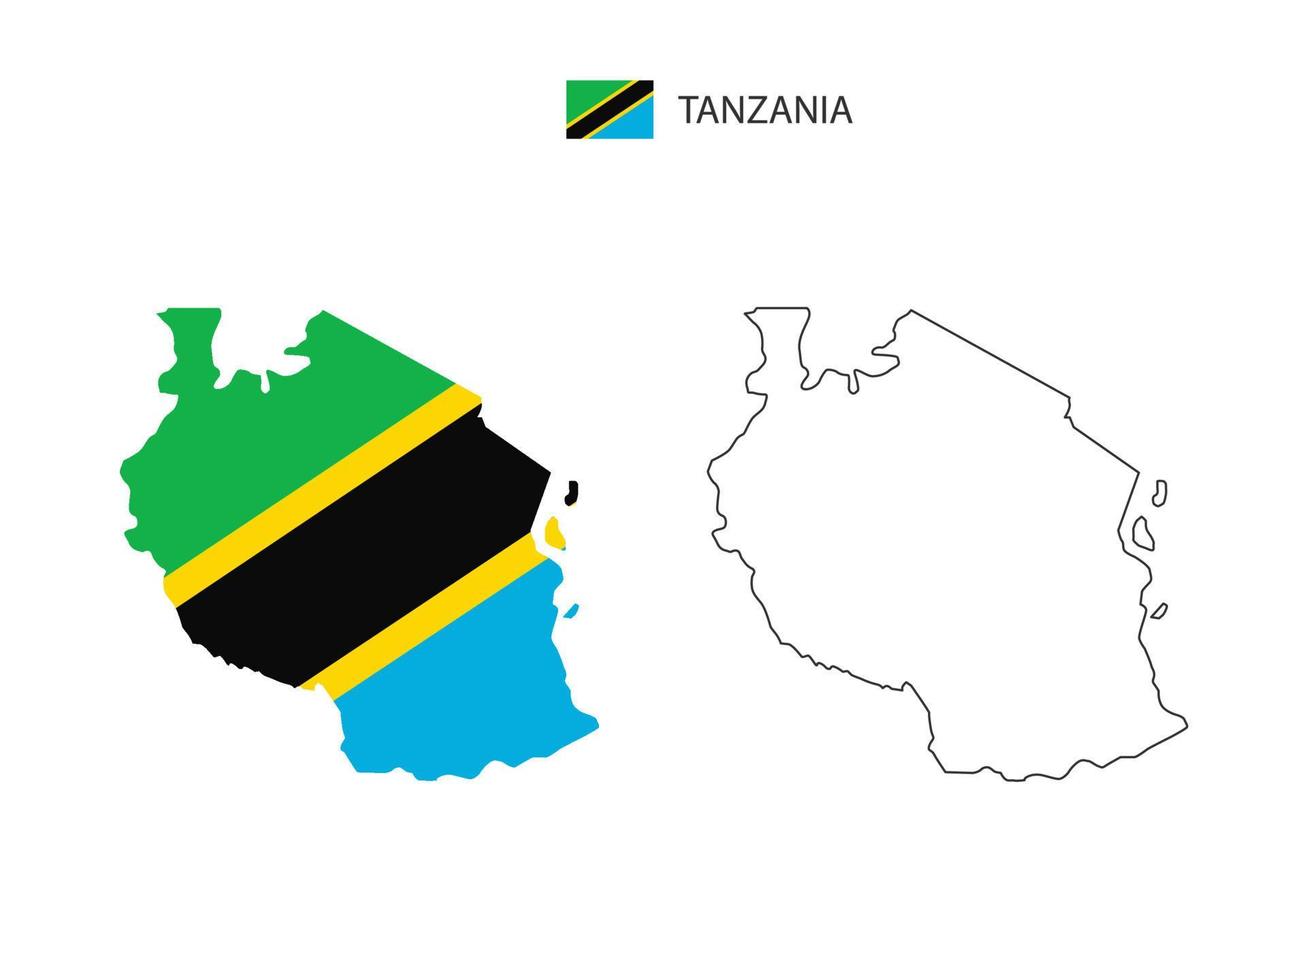 Tanzania kaart stad vector verdeeld door schets eenvoud stijl. hebben 2 versies, zwart dun lijn versie en kleur van land vlag versie. beide kaart waren Aan de wit achtergrond.